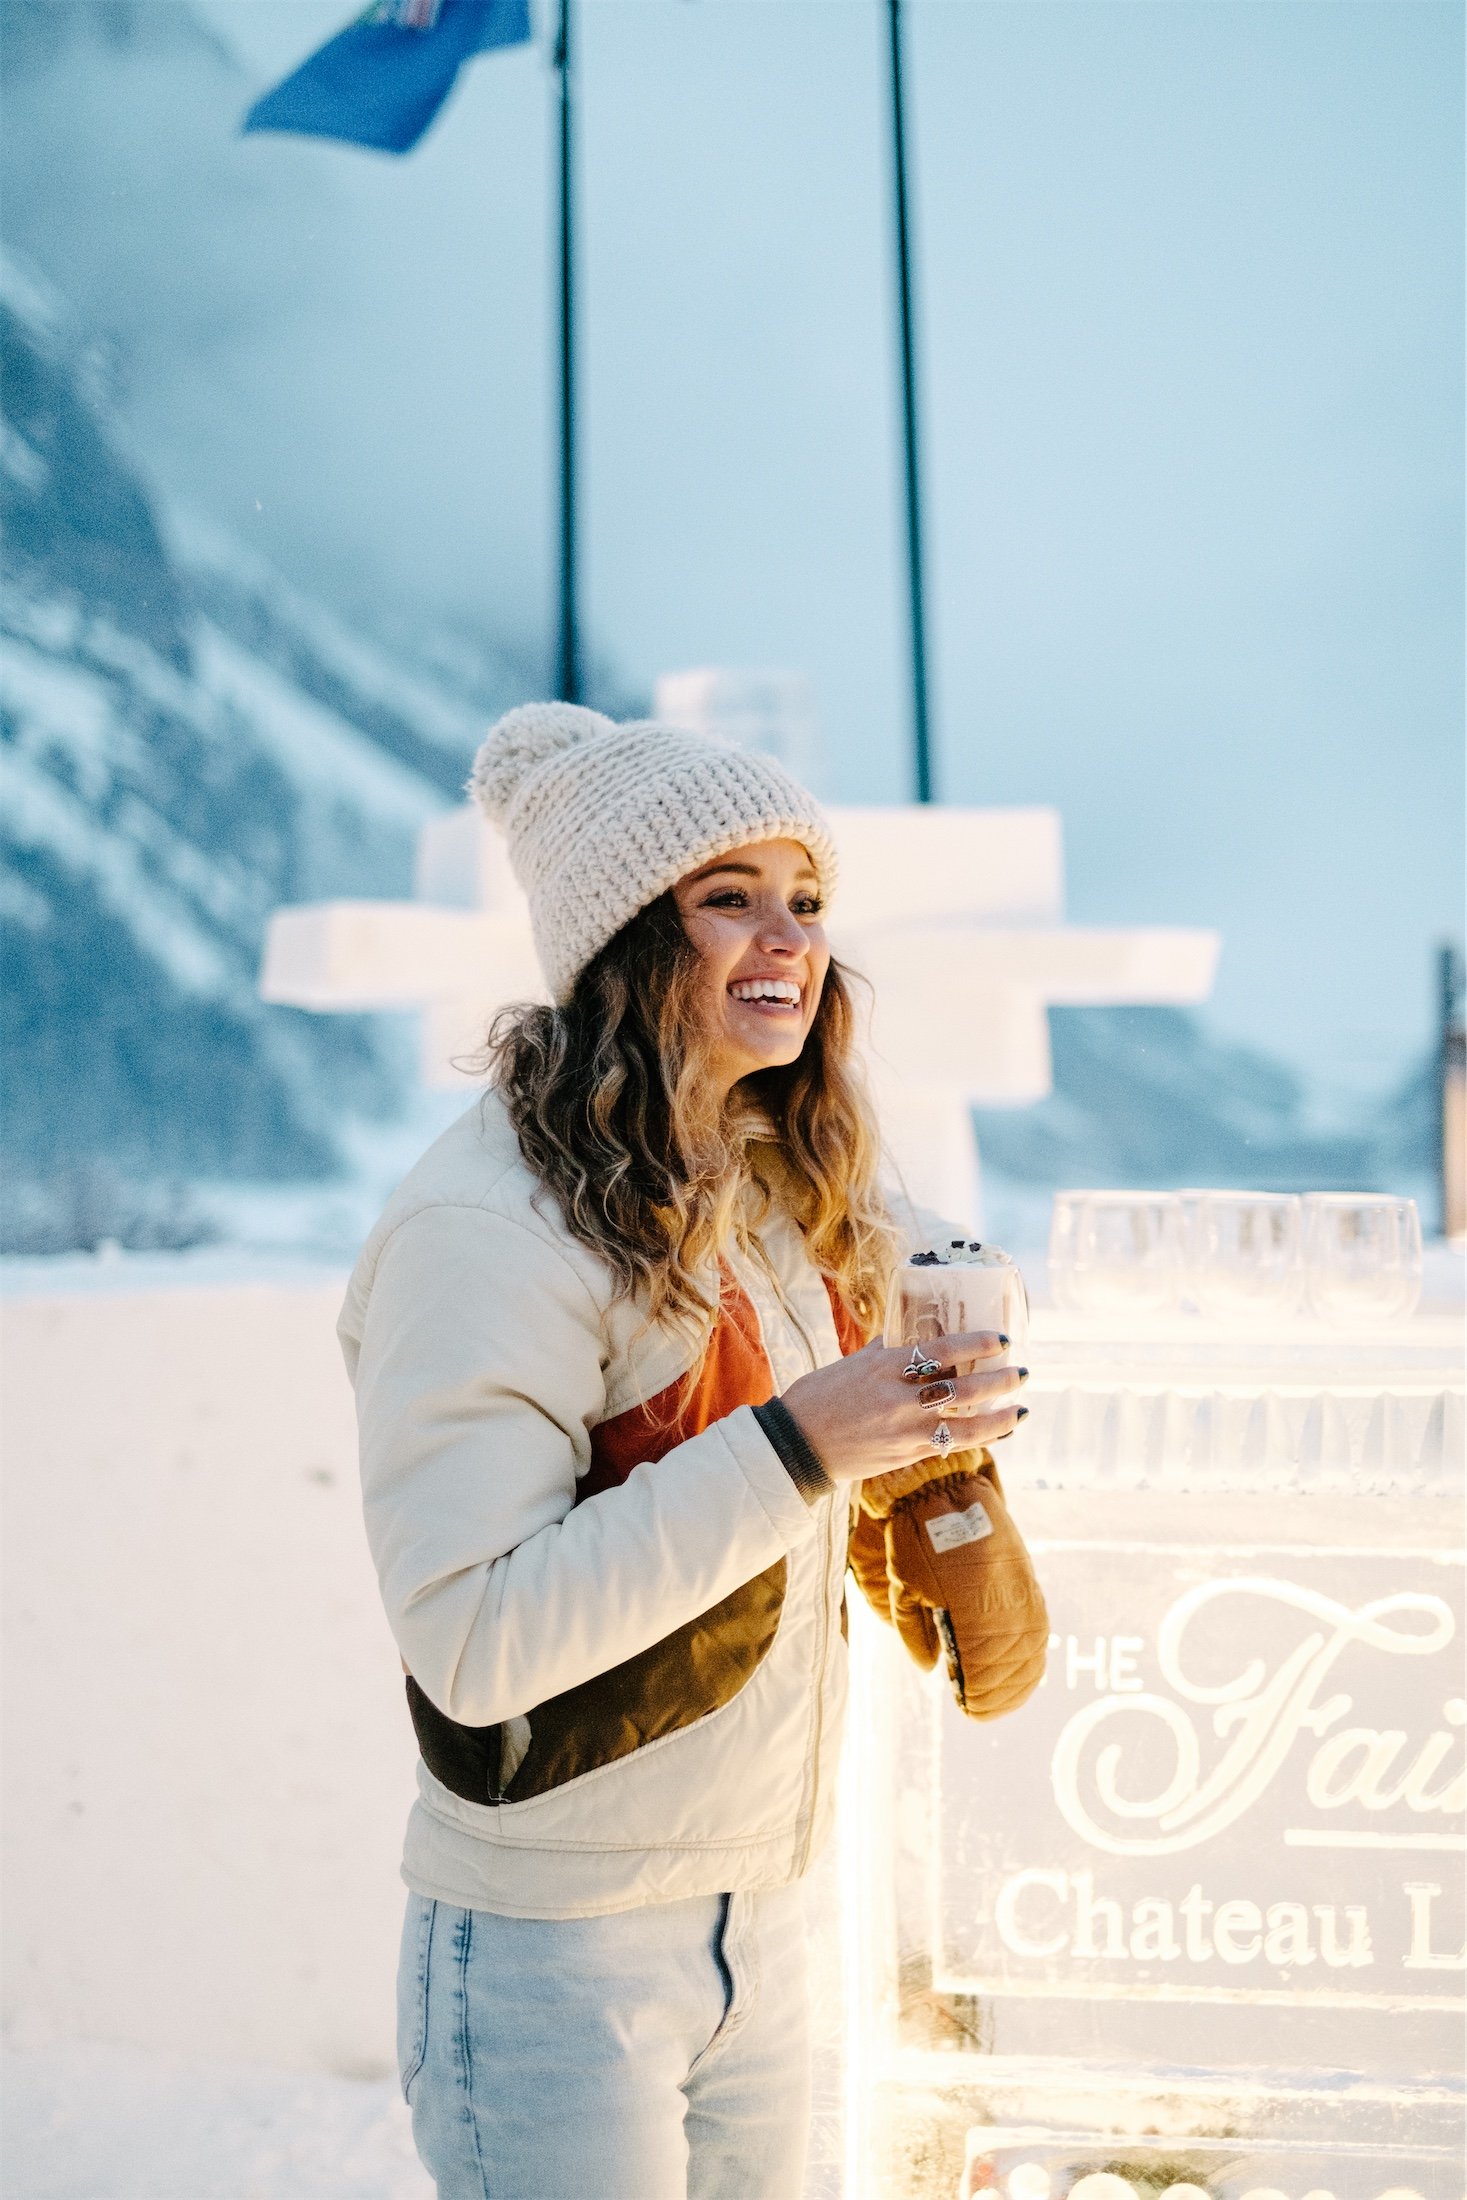 The Ice Bar - Fairmont Chateau Lake Louise